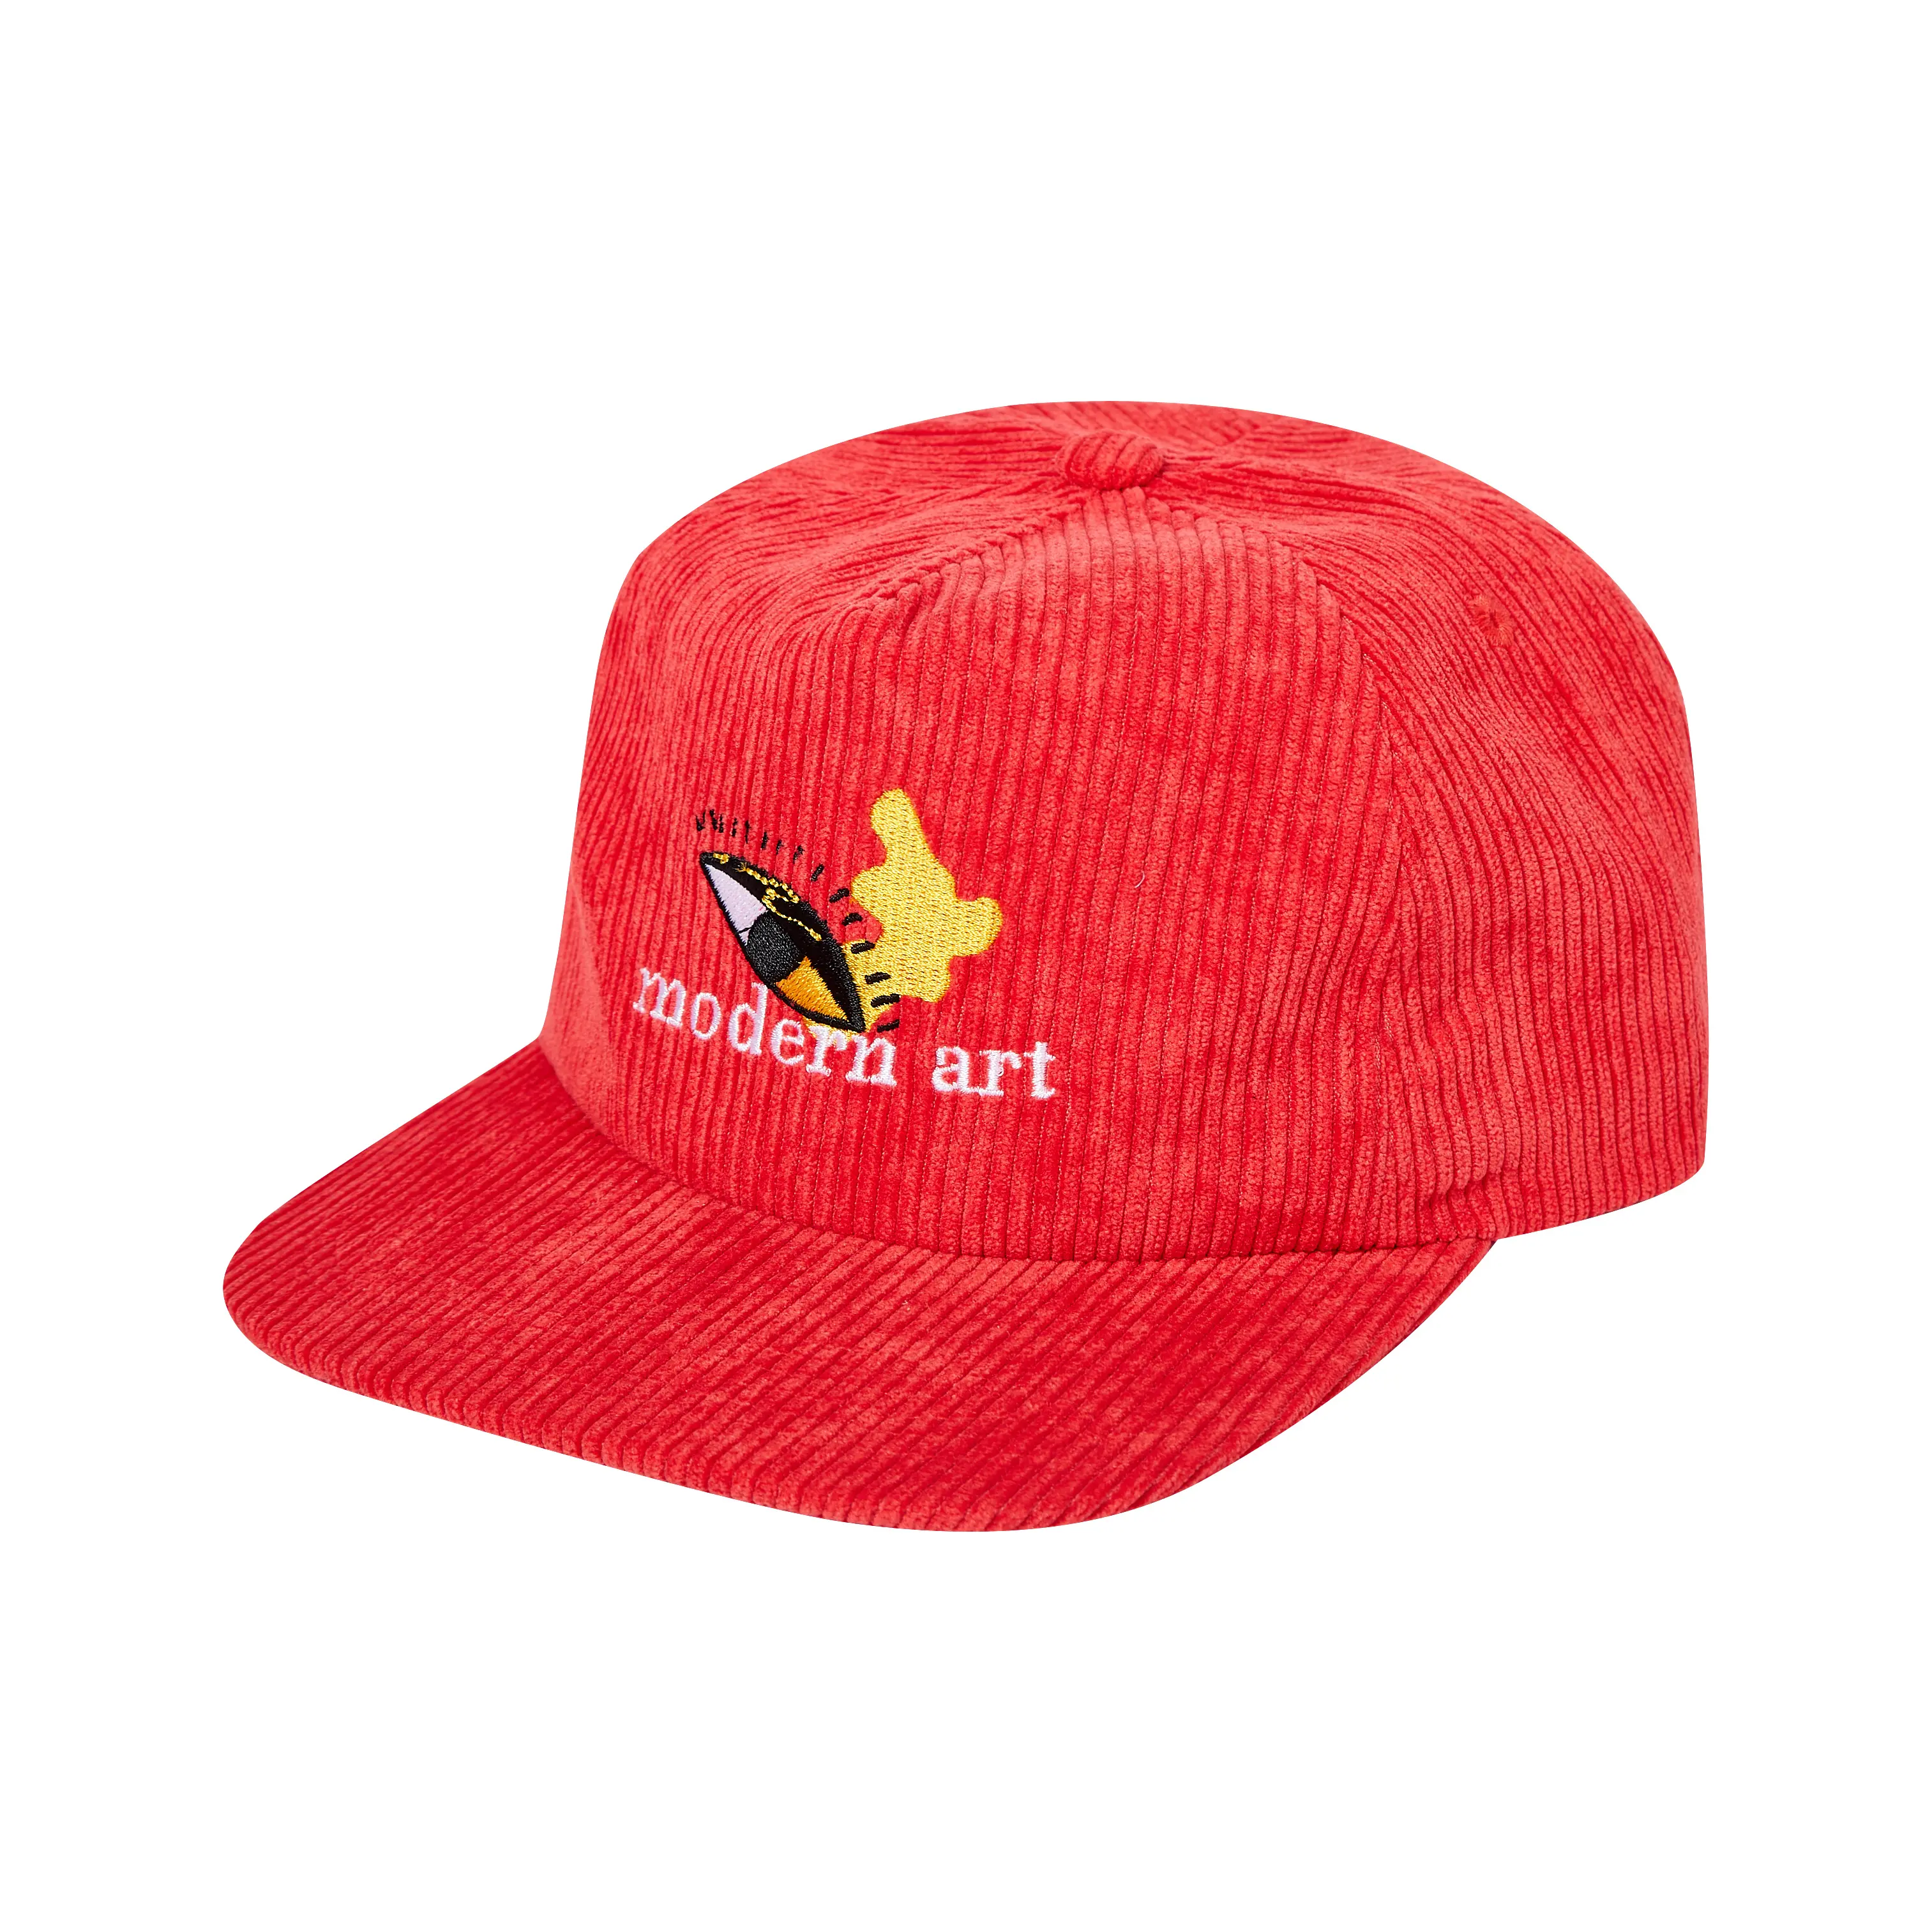 Vintage Bán Buôn 5 Bảng Điều Khiển Không Cấu Trúc Cap Thêu Red Hip Hop Dày Curduroy Snapback Hat